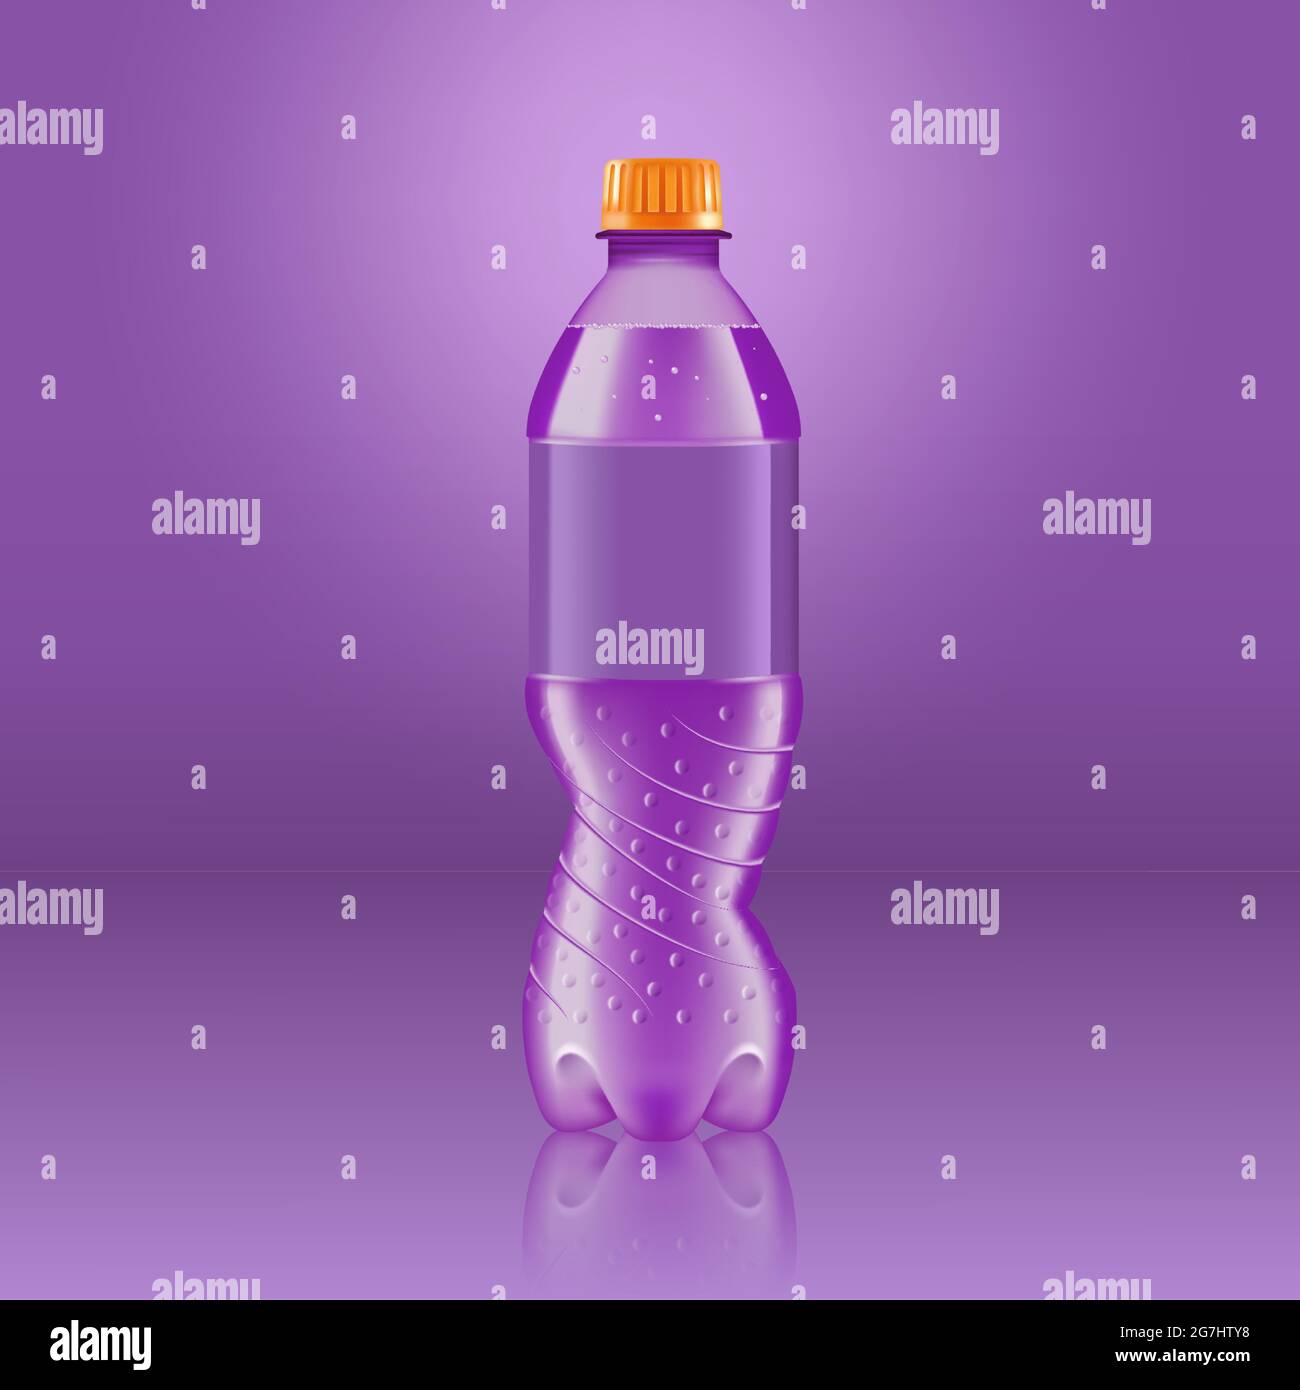 Maquette de bouteille de limonade au soda réaliste avec étiquette violette isolée sur fond violet réfléchie par le sol, illustration vectorielle. Adapté à Illustration de Vecteur